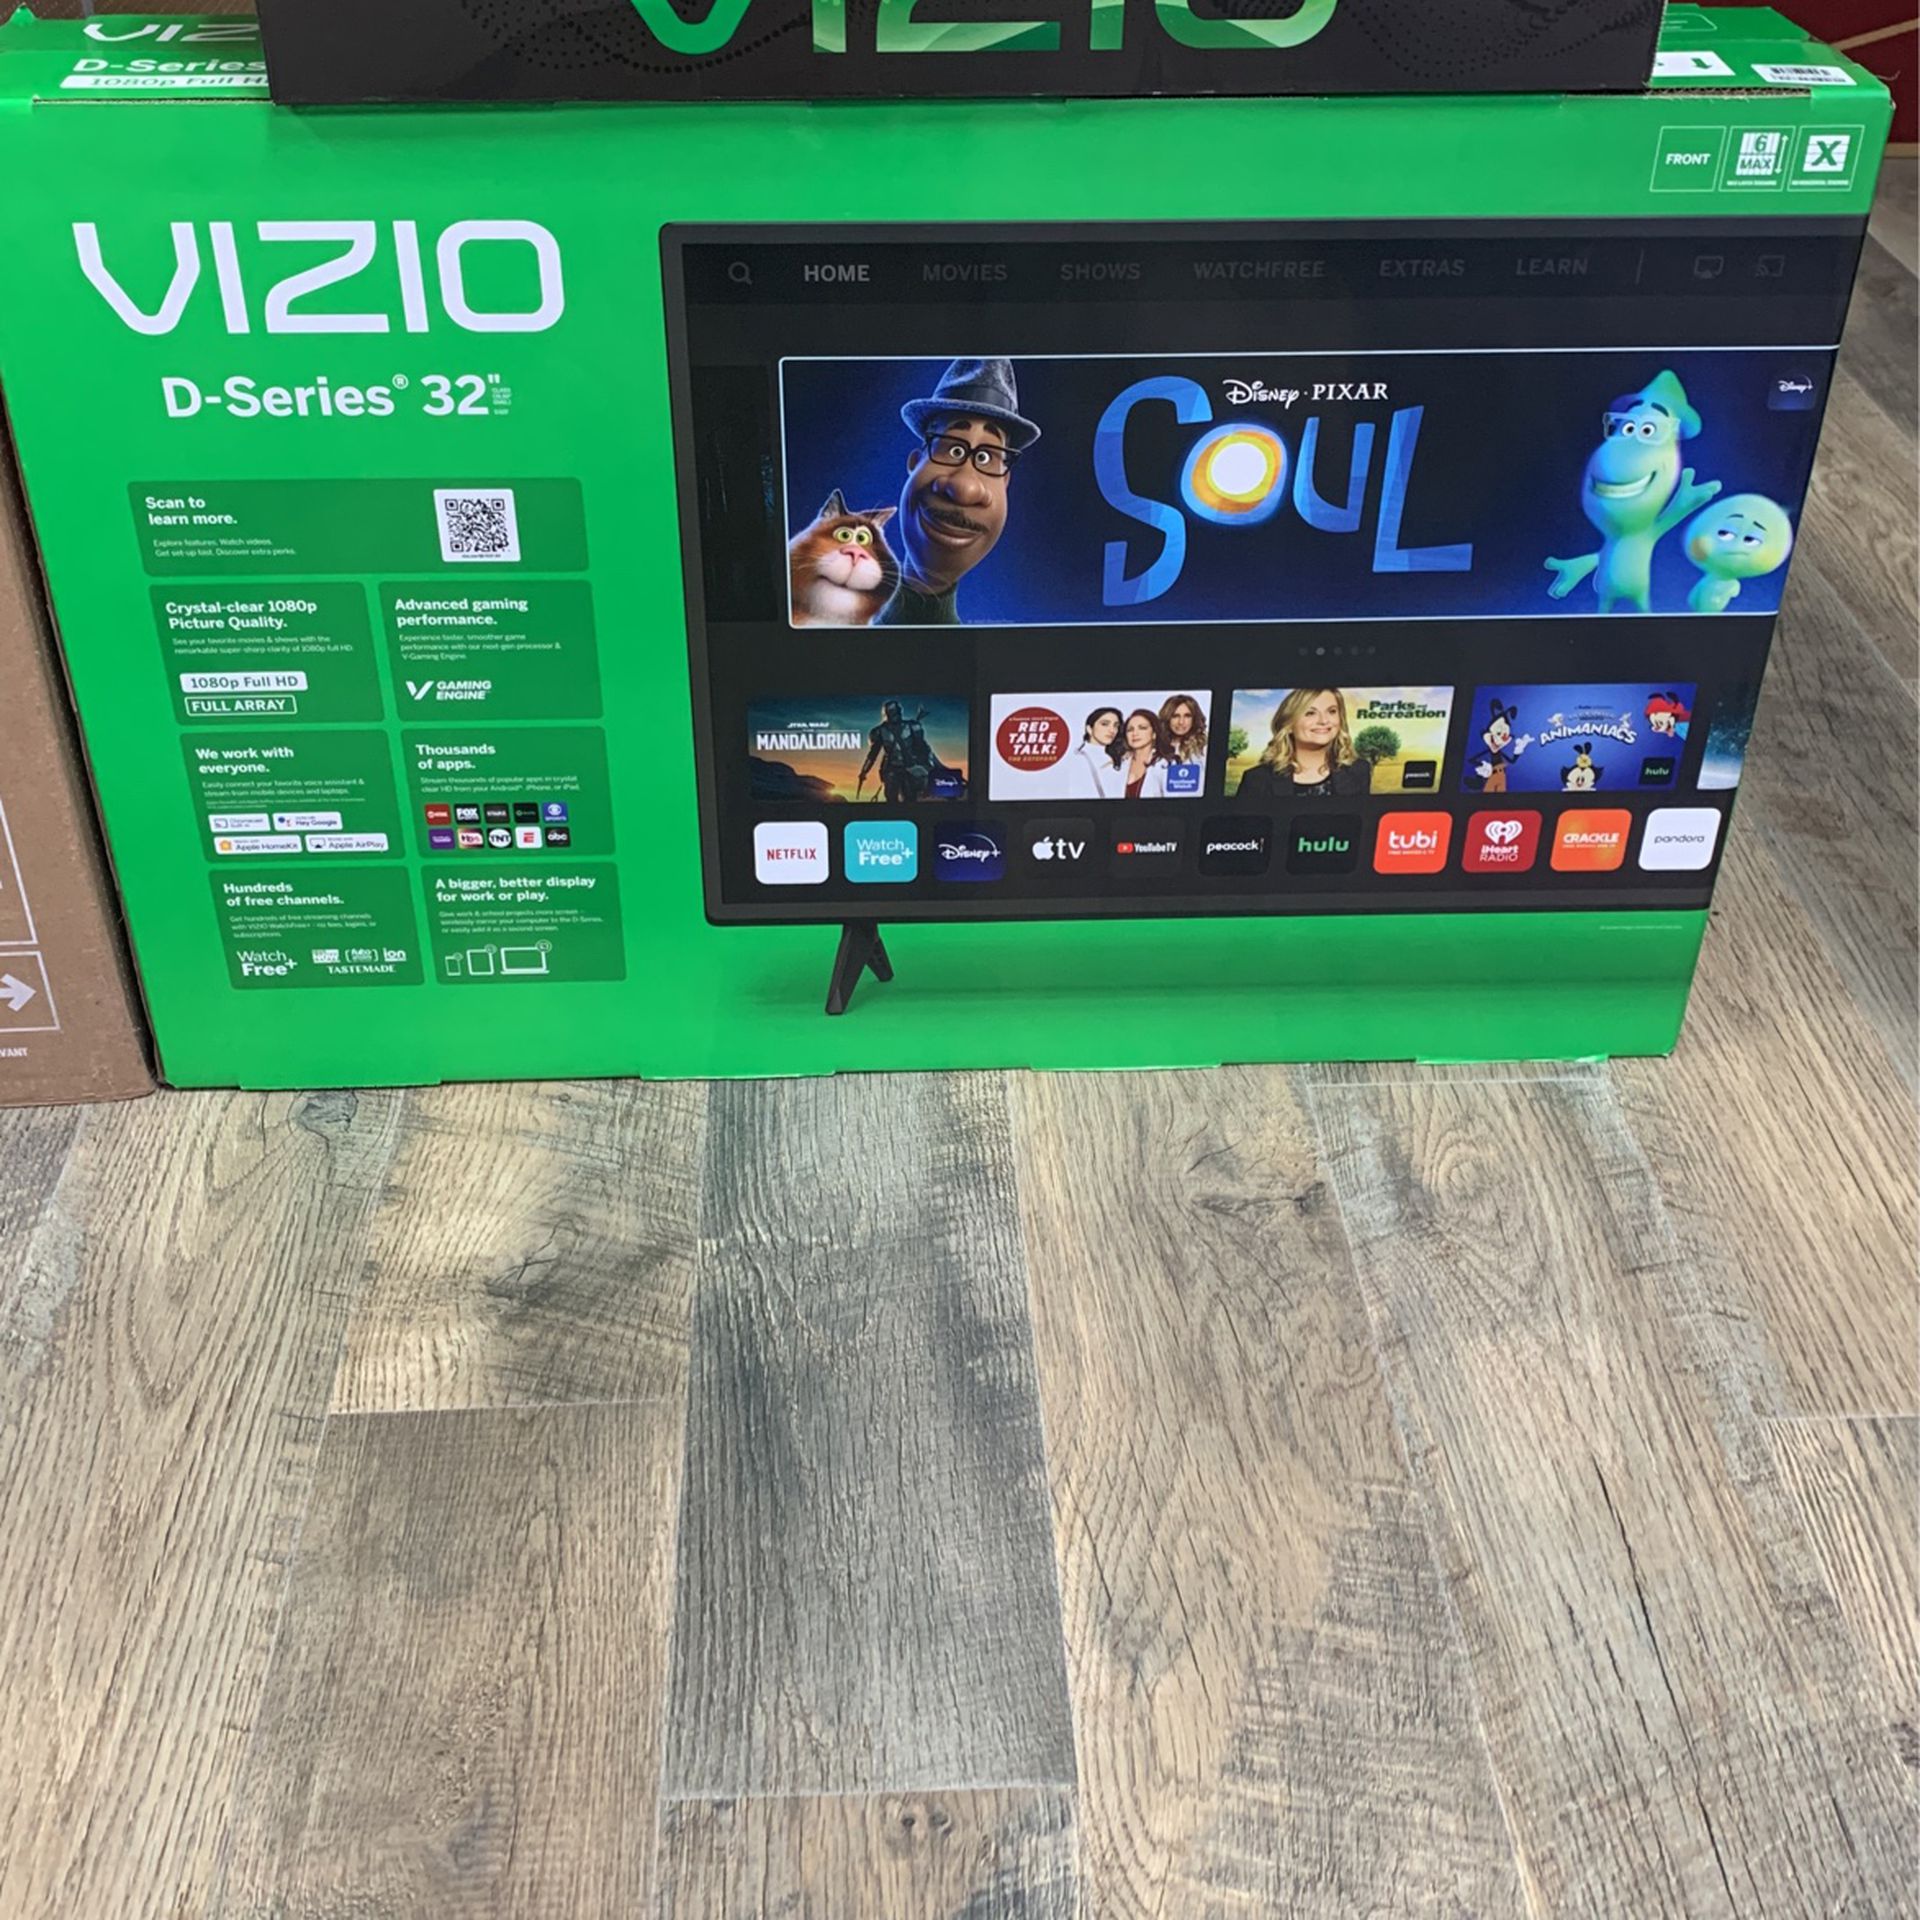 32-inch Vizio D-Series Smart TV